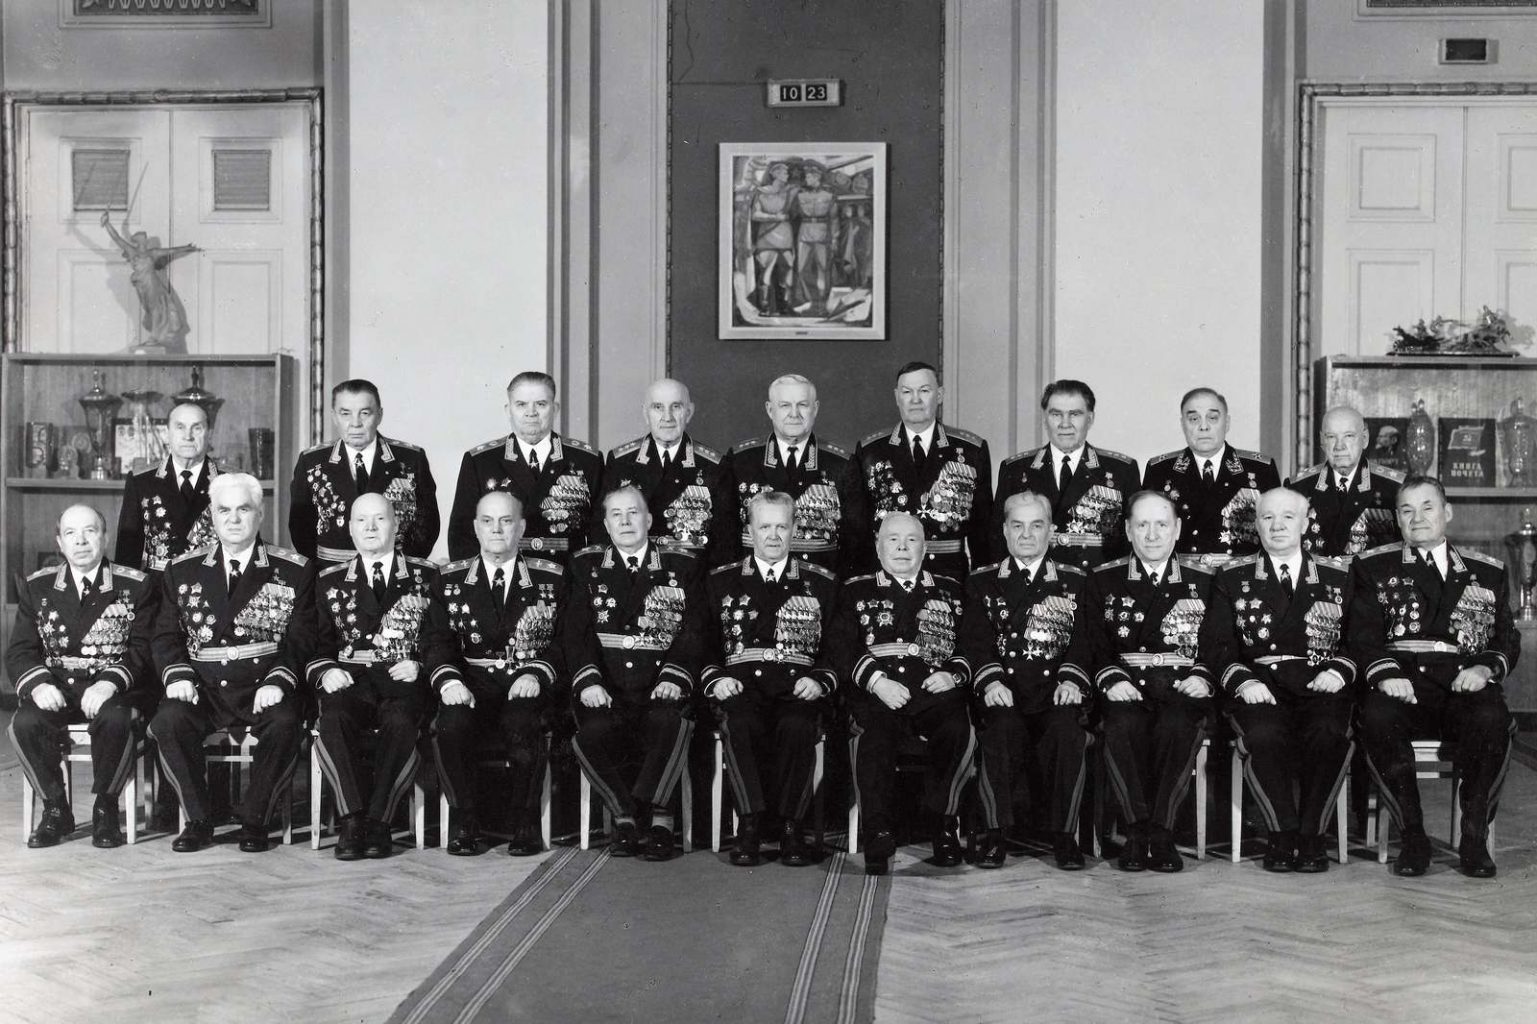 Photographie originale montrant les chefs militaires-maréchaux et colonel-généraux de l'URSS durant la guerre froide vers 1970